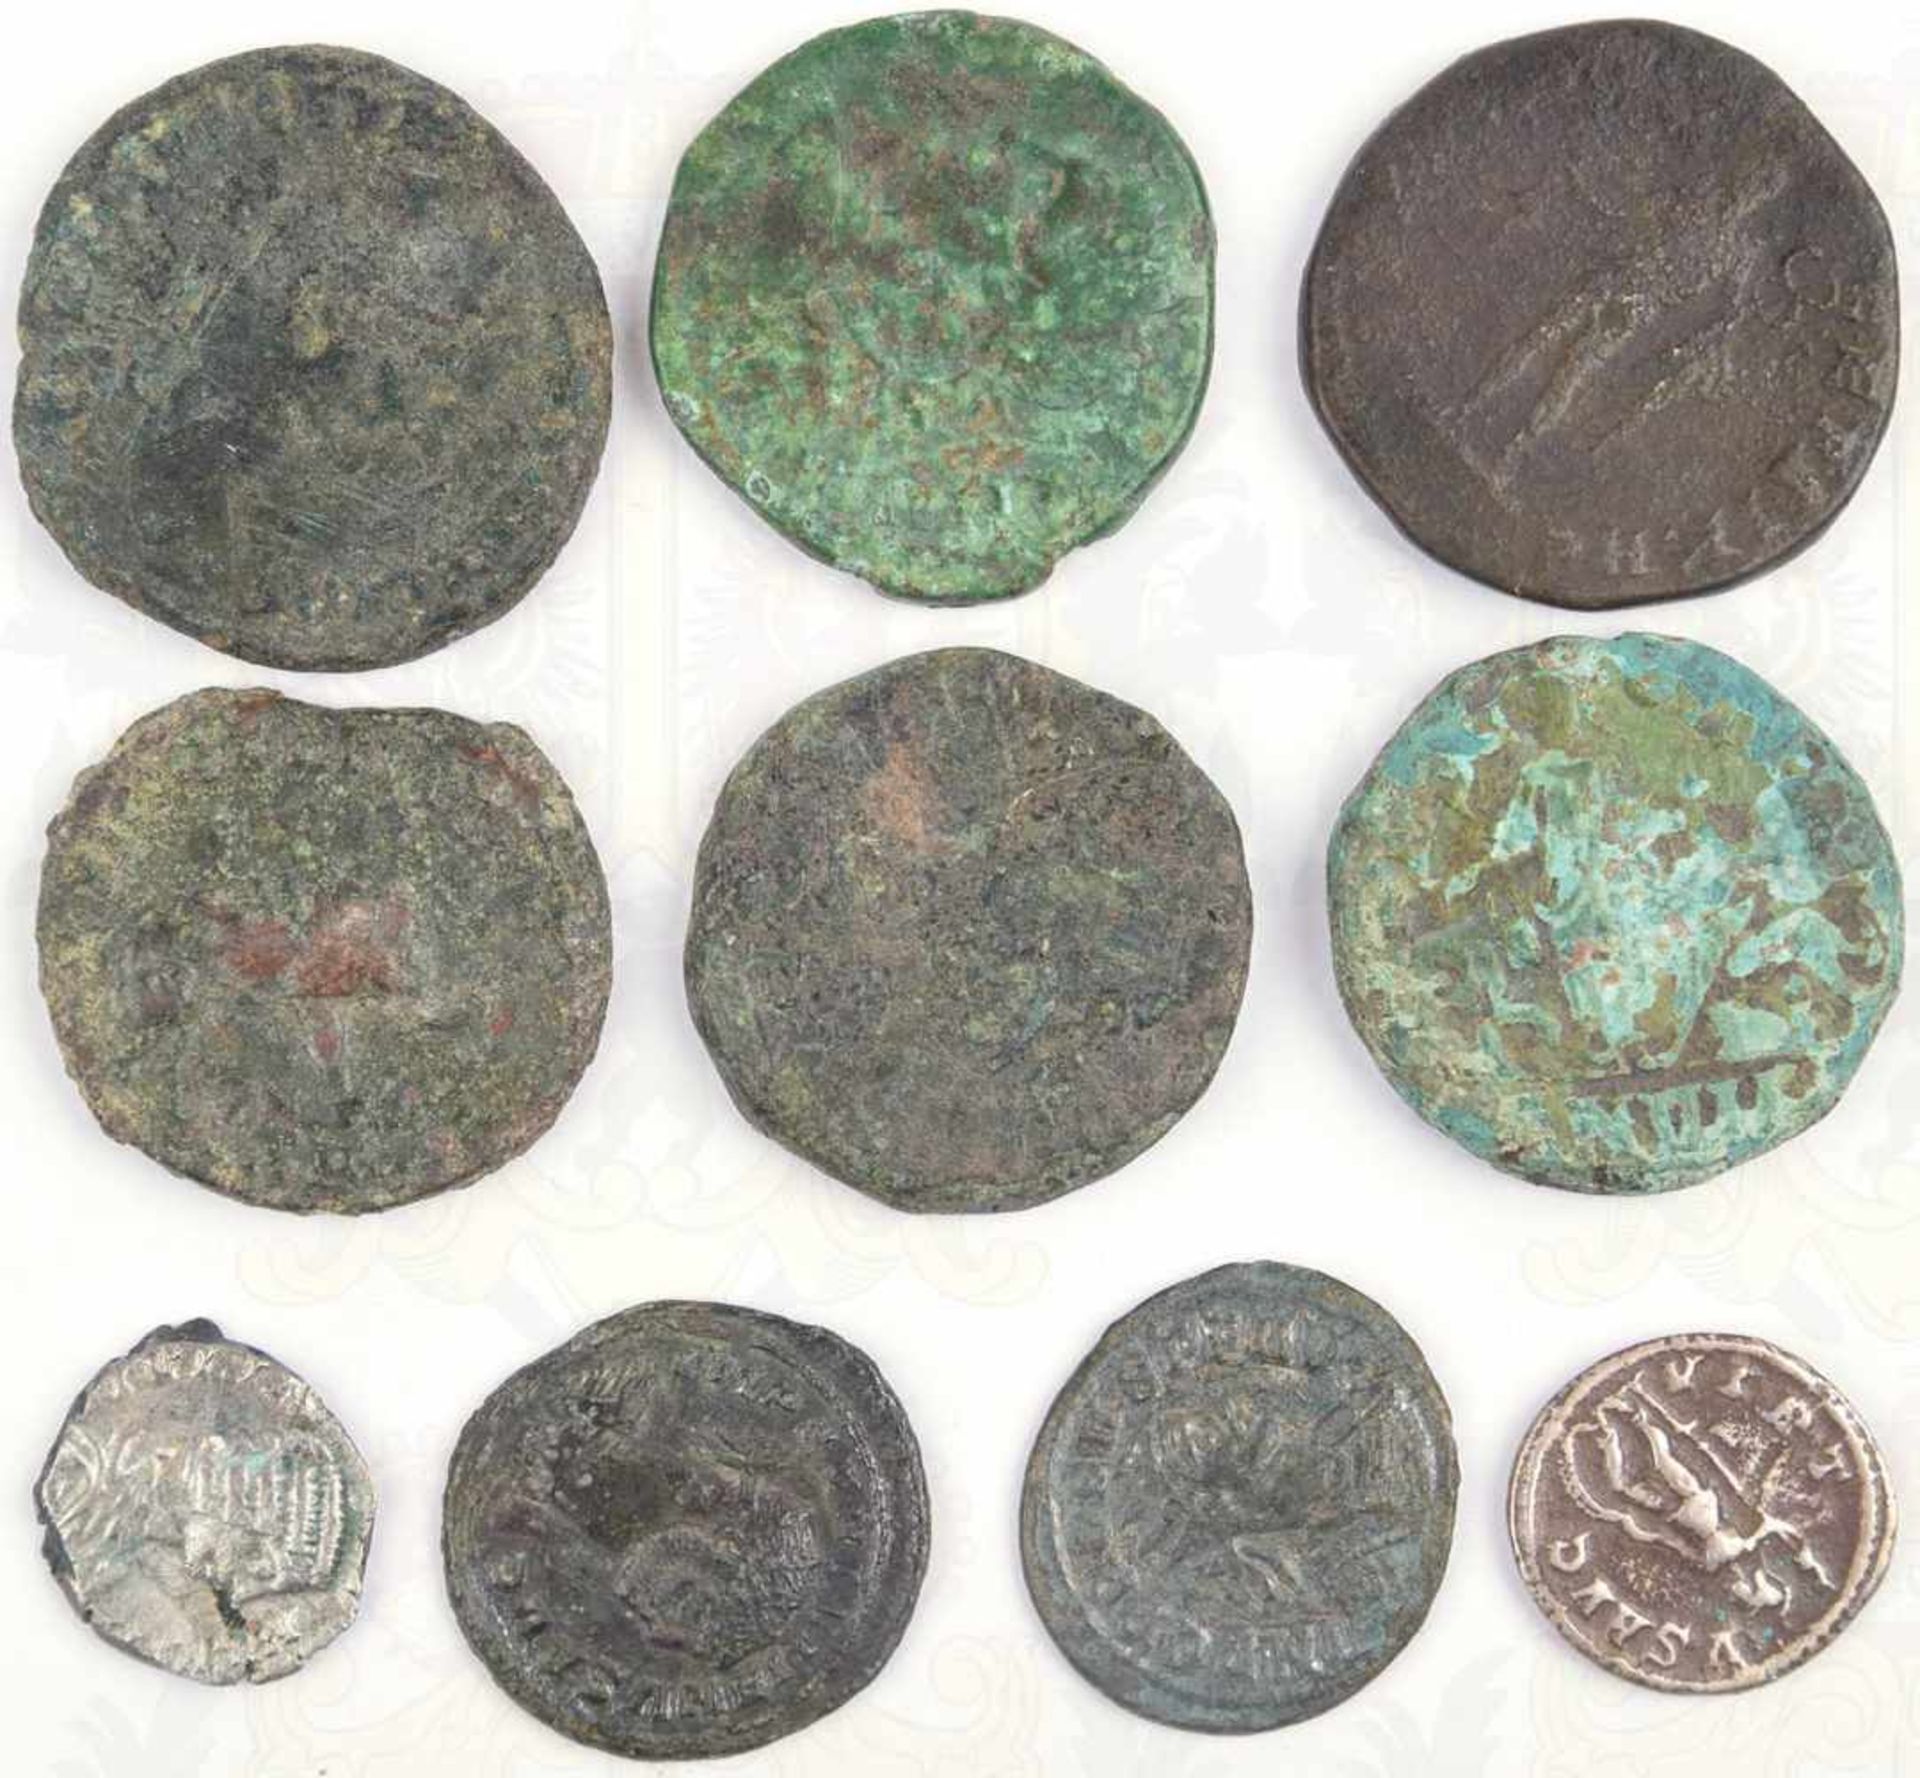 10 KLEINMÜNZEN, gereinigte Bodenfunde, meist römisch, 8 Bronze, 2 Silber, versch. Kaiserportraits, - Bild 2 aus 2